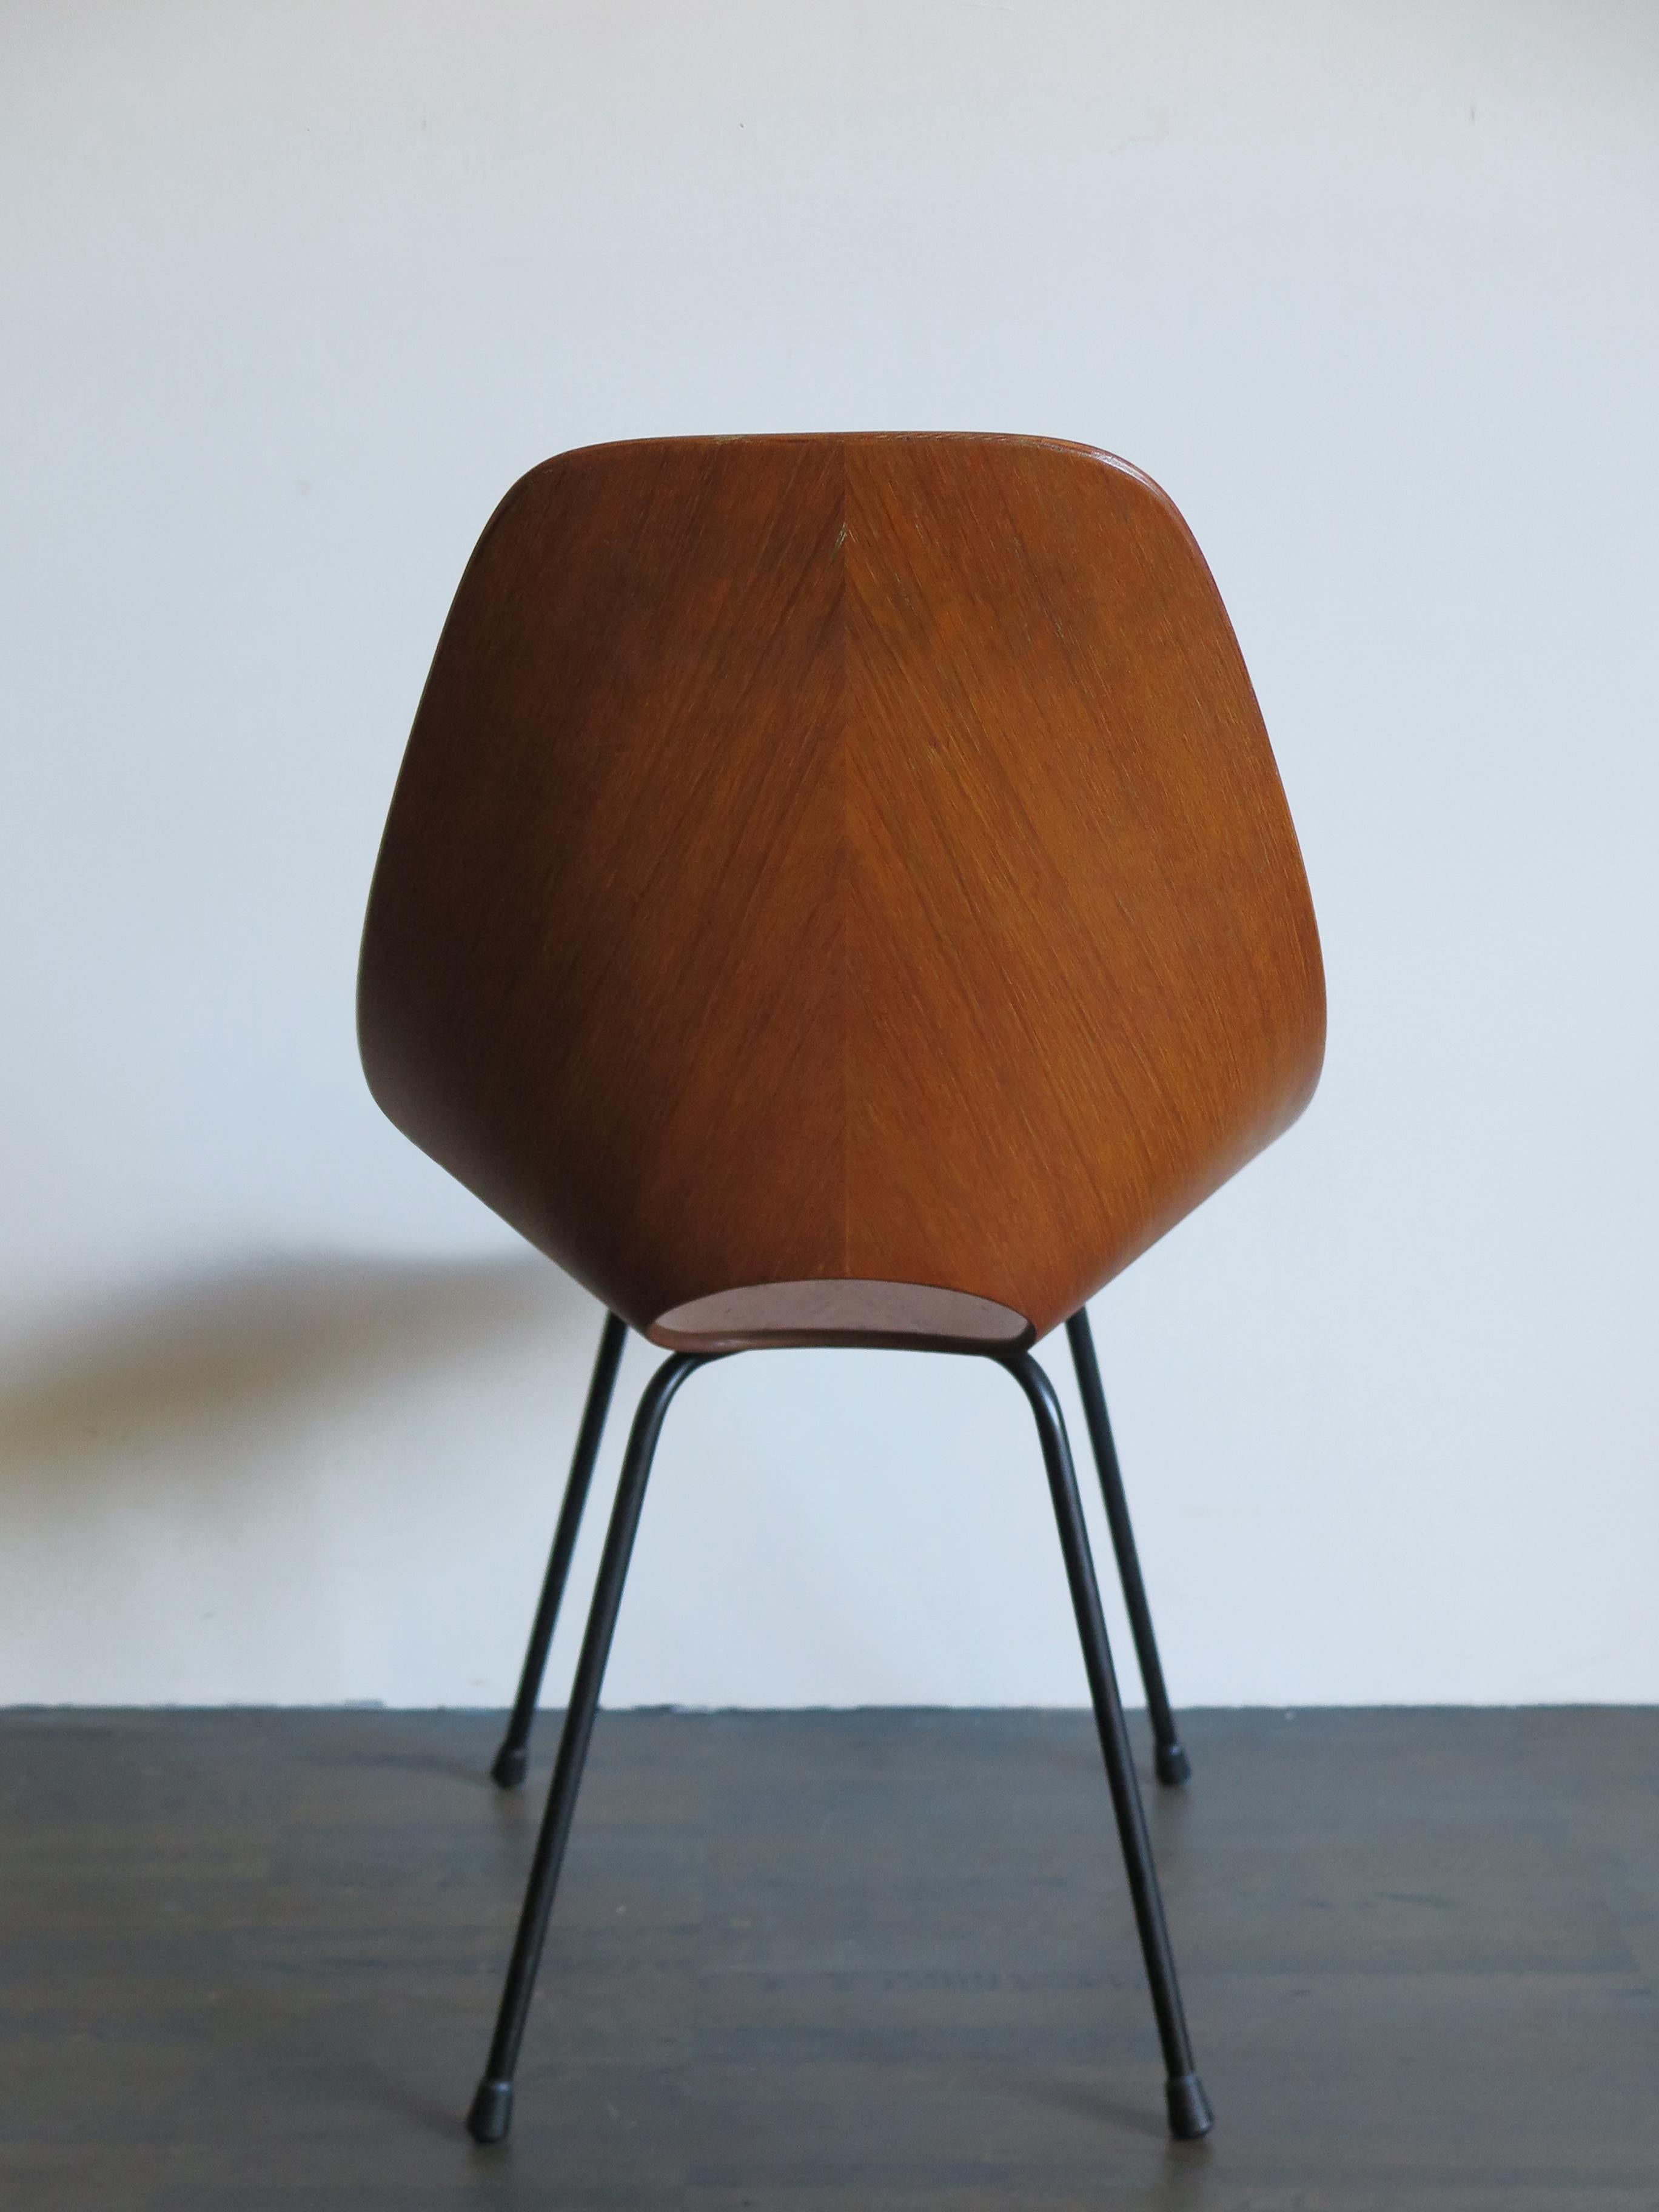 Vittorio Nobili Italian Wood Medea Chairs for Fratelli Tagliabue, 1950s For Sale 4